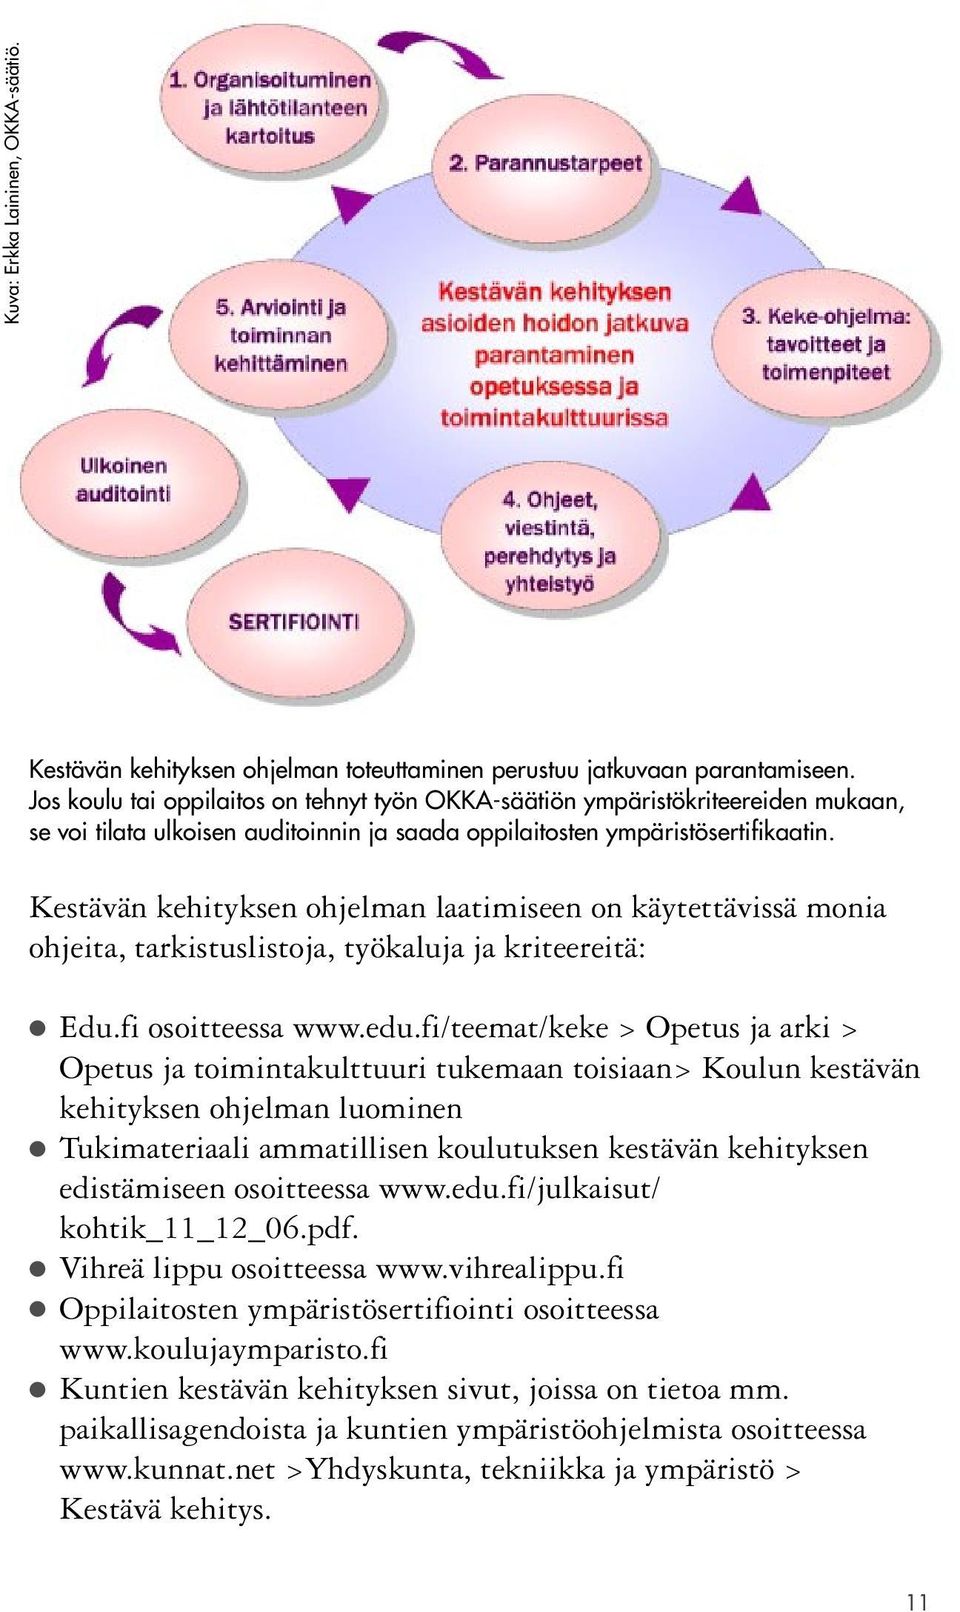 Kestävän kehityksen ohjelman laatimiseen on käytettävissä monia ohjeita, tarkistuslistoja, työkaluja ja kriteereitä: Edu.fi osoitteessa www.edu.